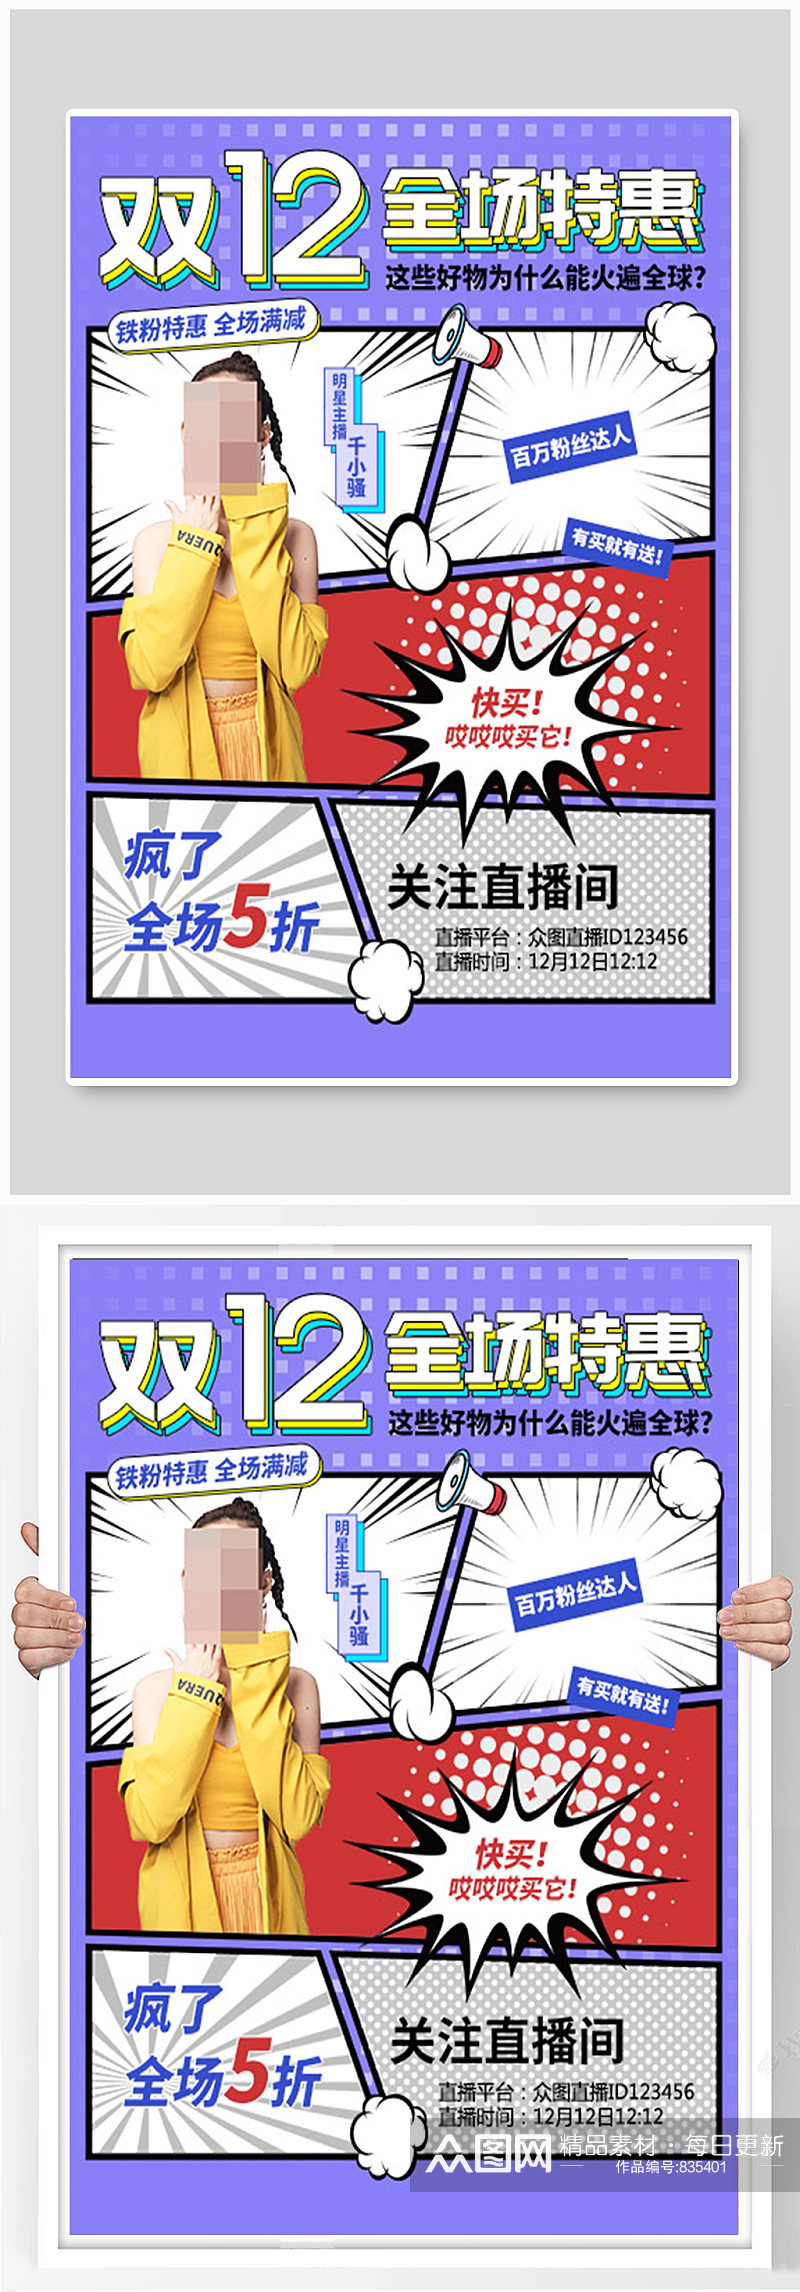 漫画风双12促销海报素材